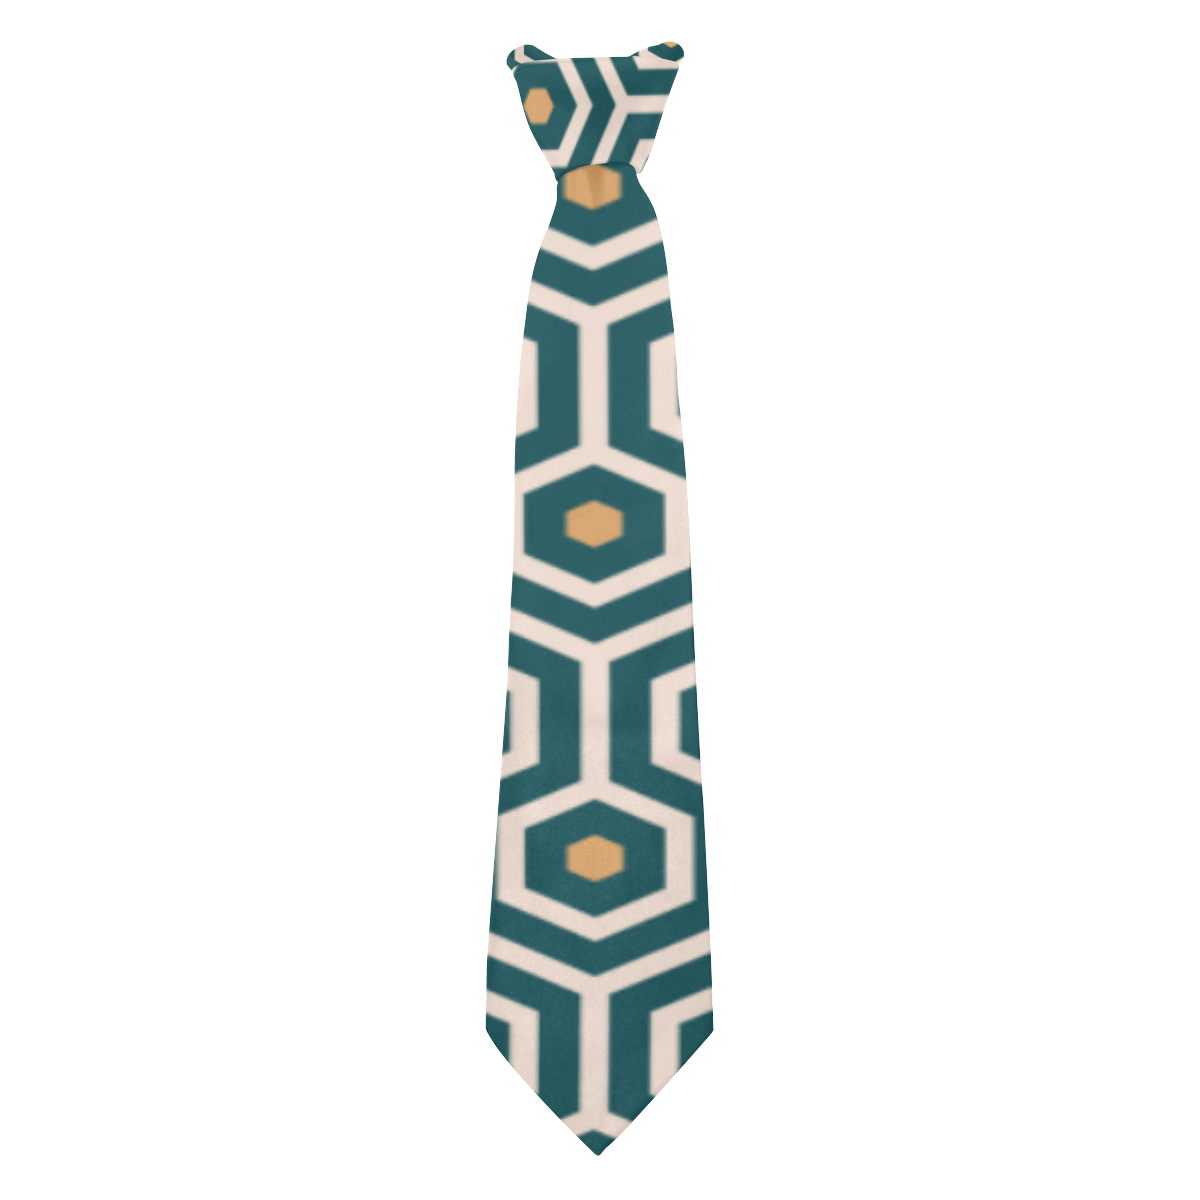 Art Deco emerald green Custom Peekaboo Tie with Hidden Picture